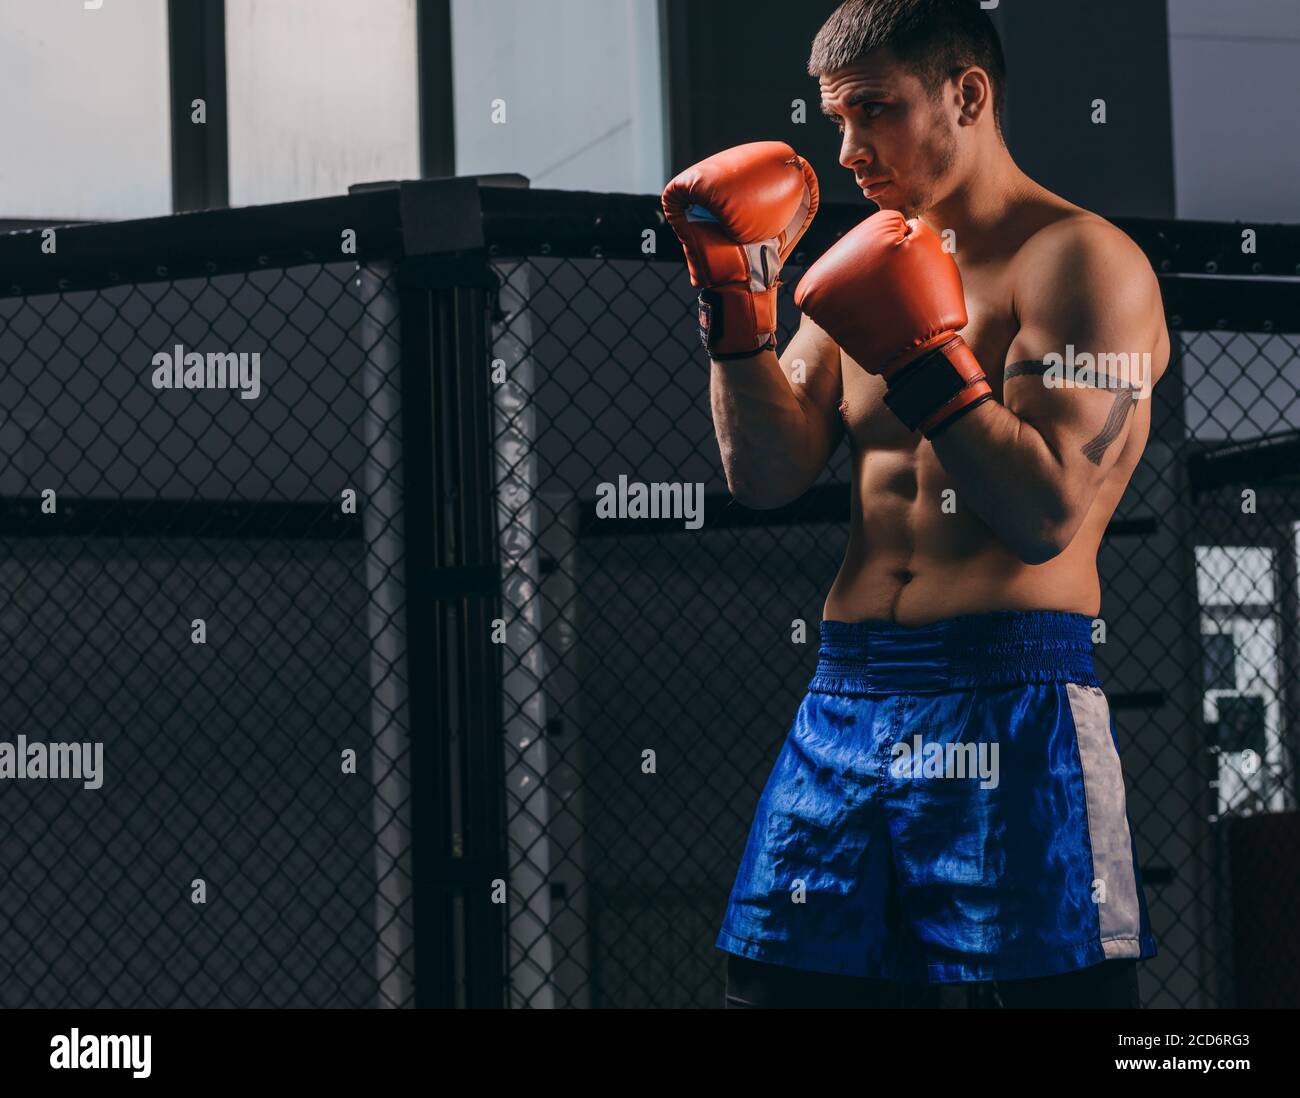 Muskulös hart arbeitende Kämpfer in roten Boxhandschuhen üben mit Boxsack,  Trainingsstärke und Ausdauer. Das Konzept von Sport, Boxen und Ma  Stockfotografie - Alamy